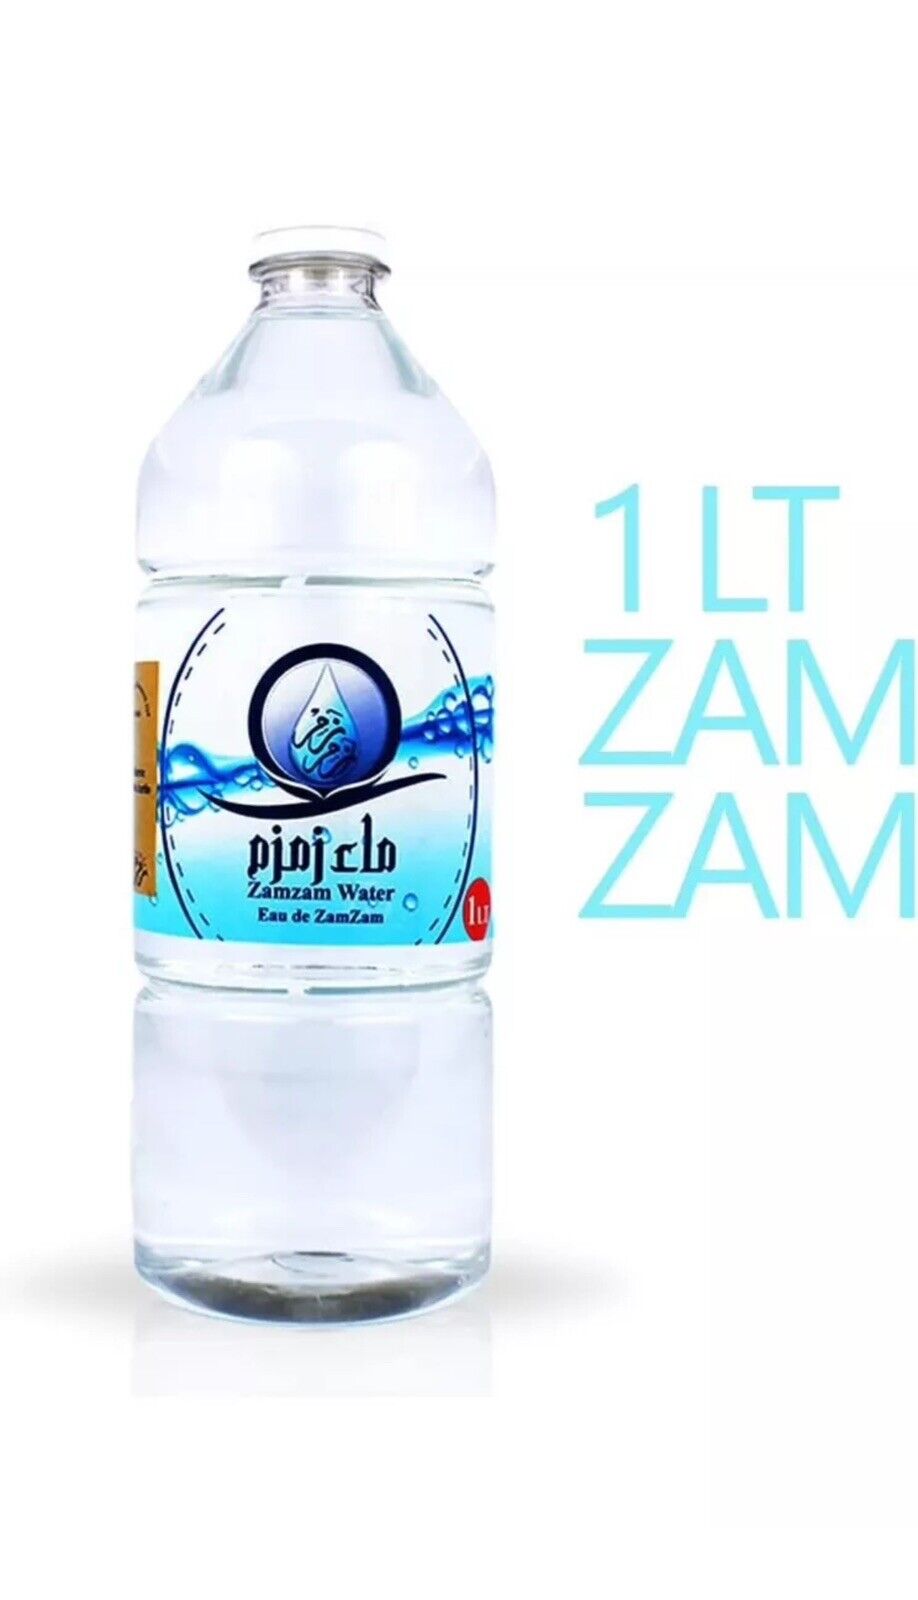 Zam Zam Water 1 Bottle Of 1 Litre Each Zamzam Water From Makkah Shipped From USA